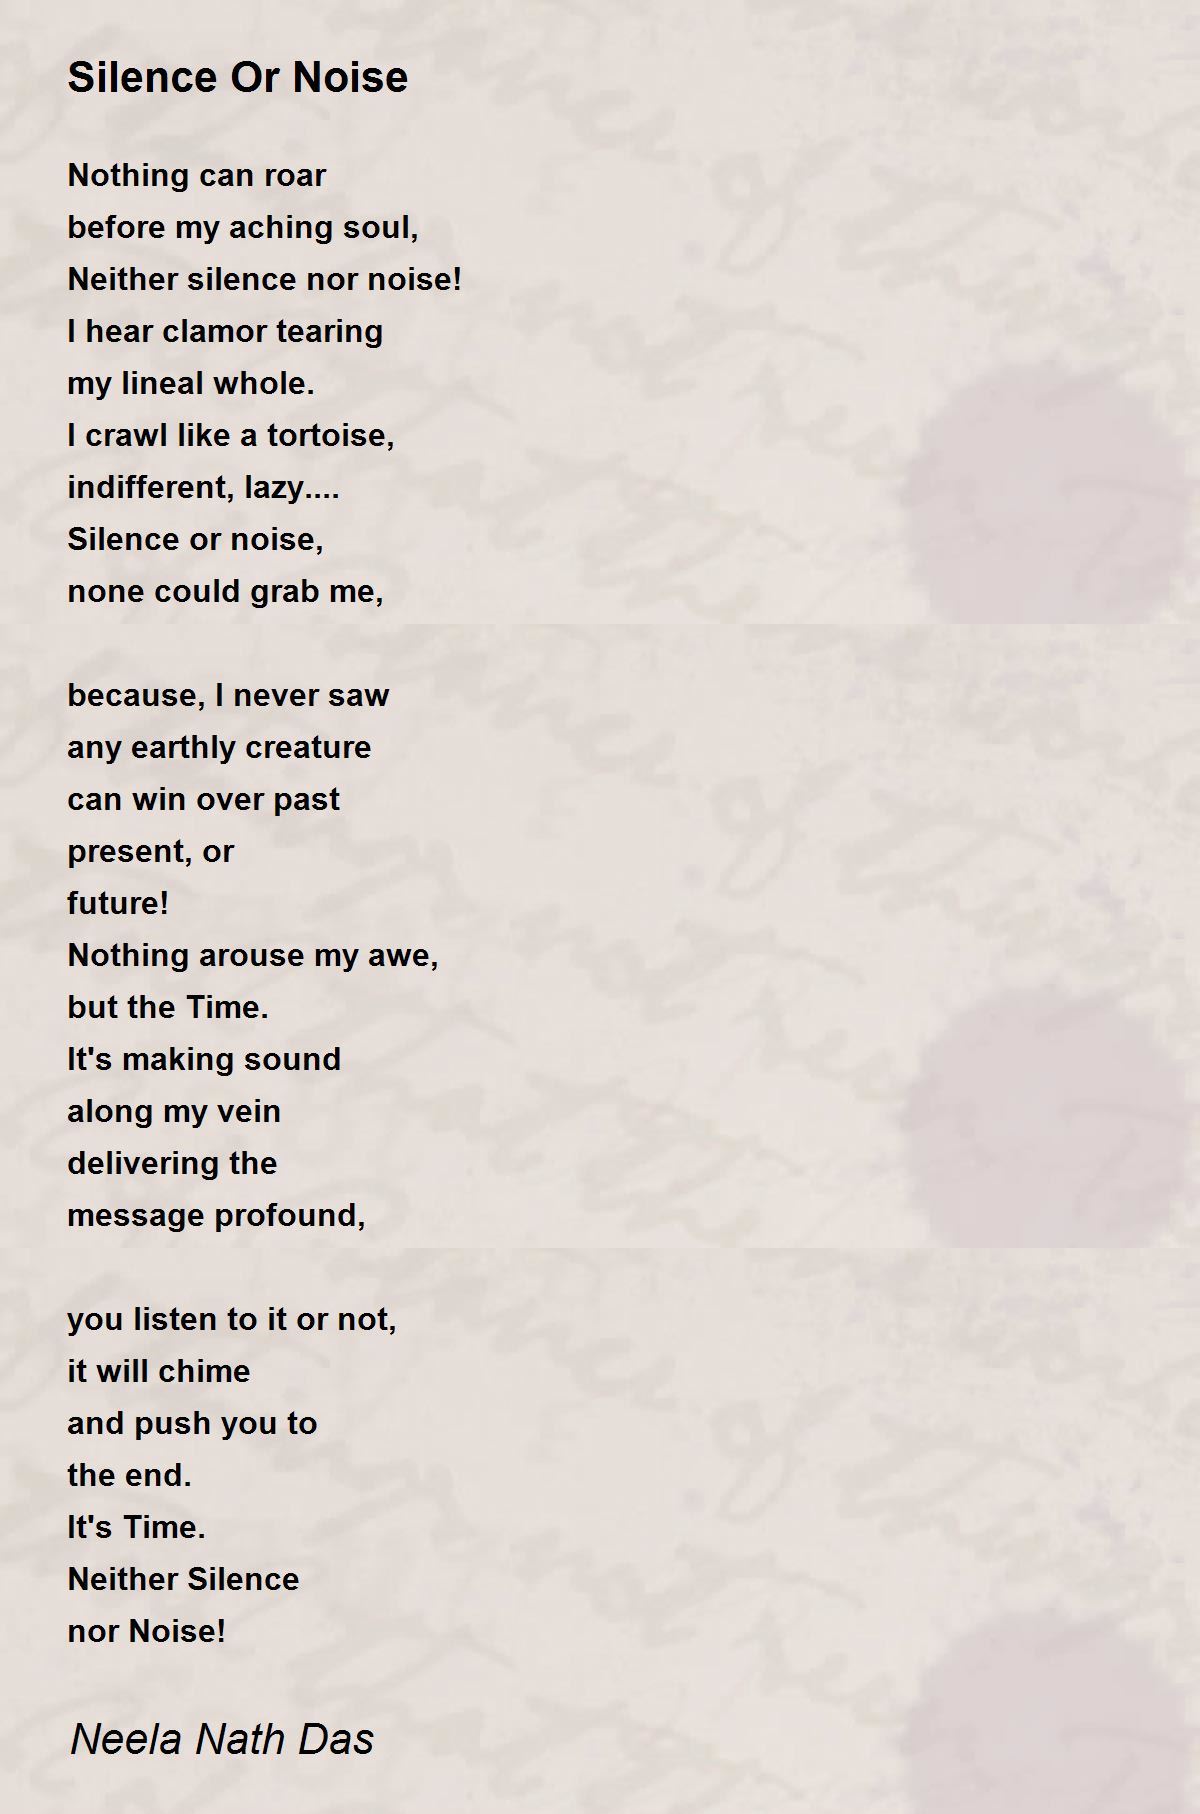 Silence Or Noise - Silence Or Noise Poem by Neela Nath Das